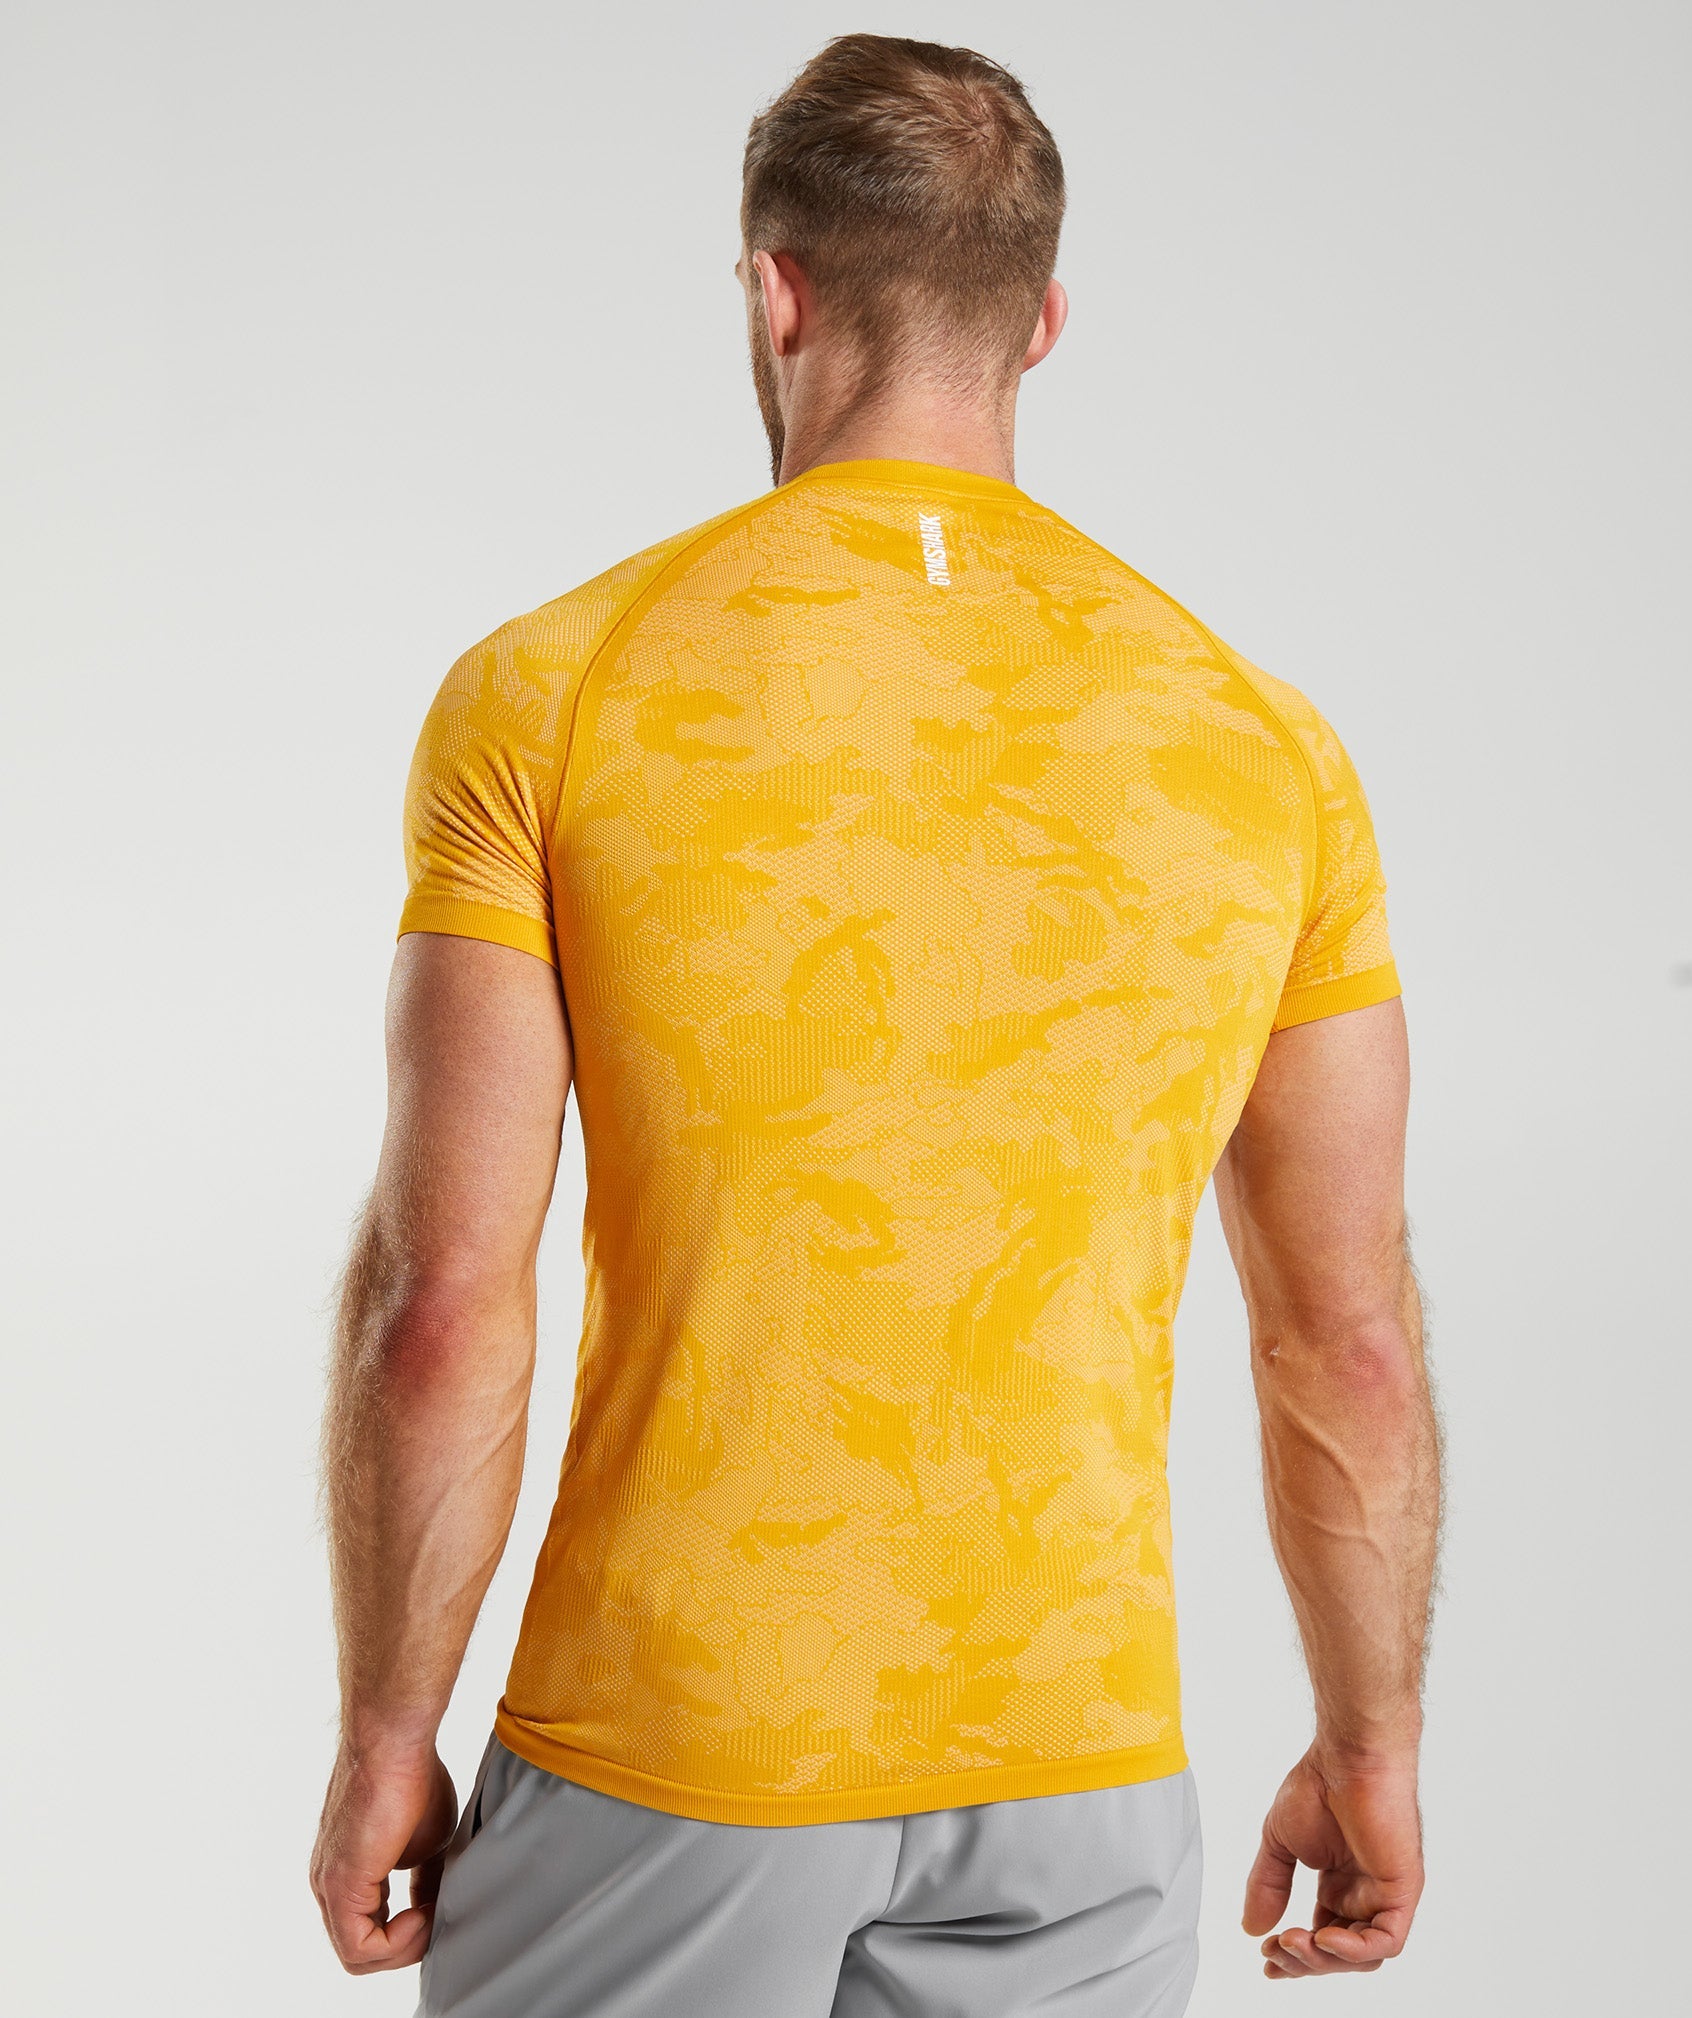 Geo Seamless T-Shirt in Sunny Yellow/White